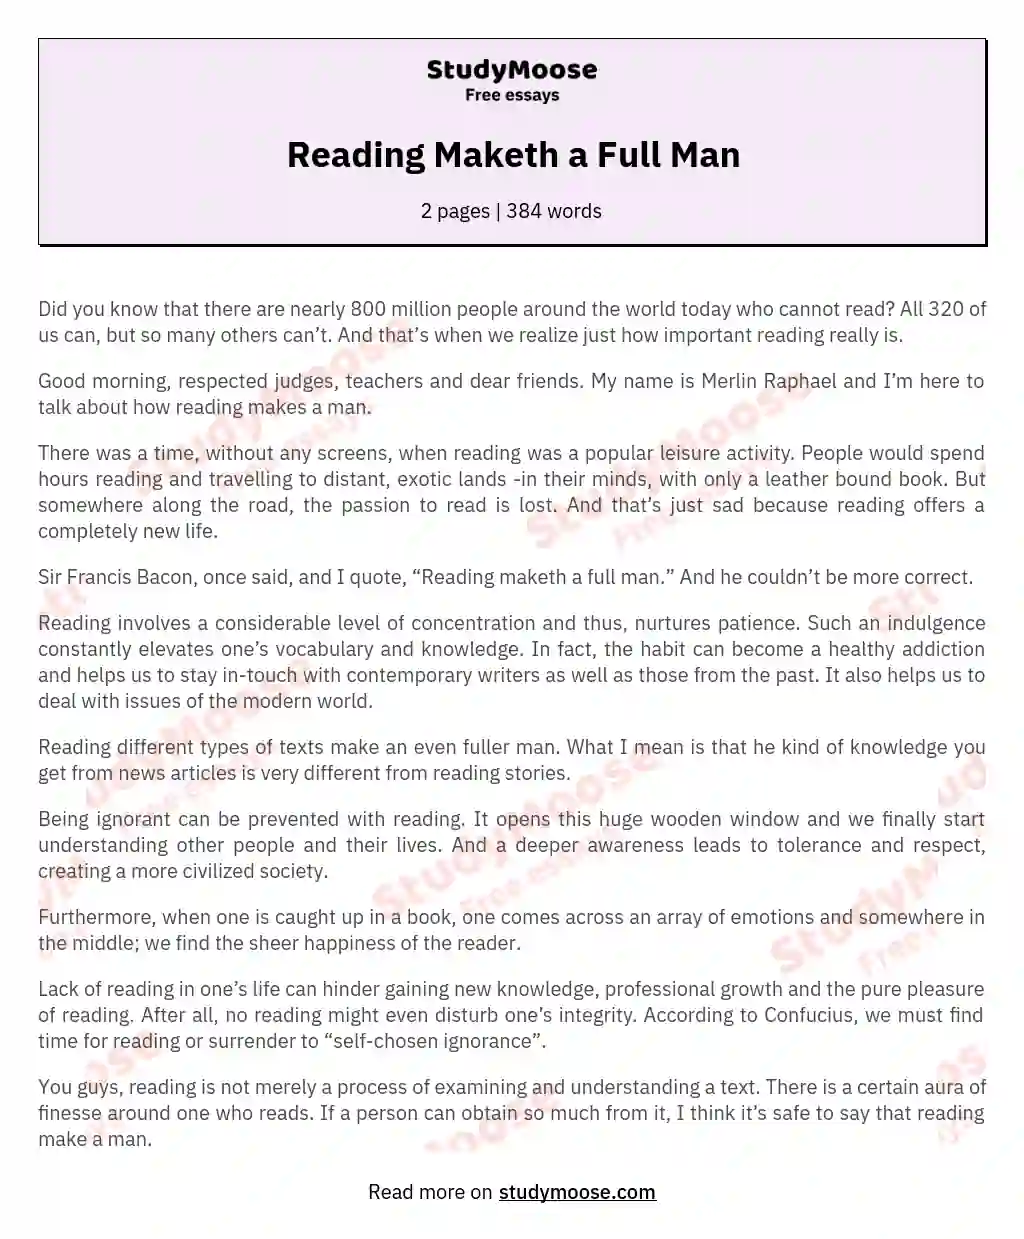 Reading Maketh a Full Man essay